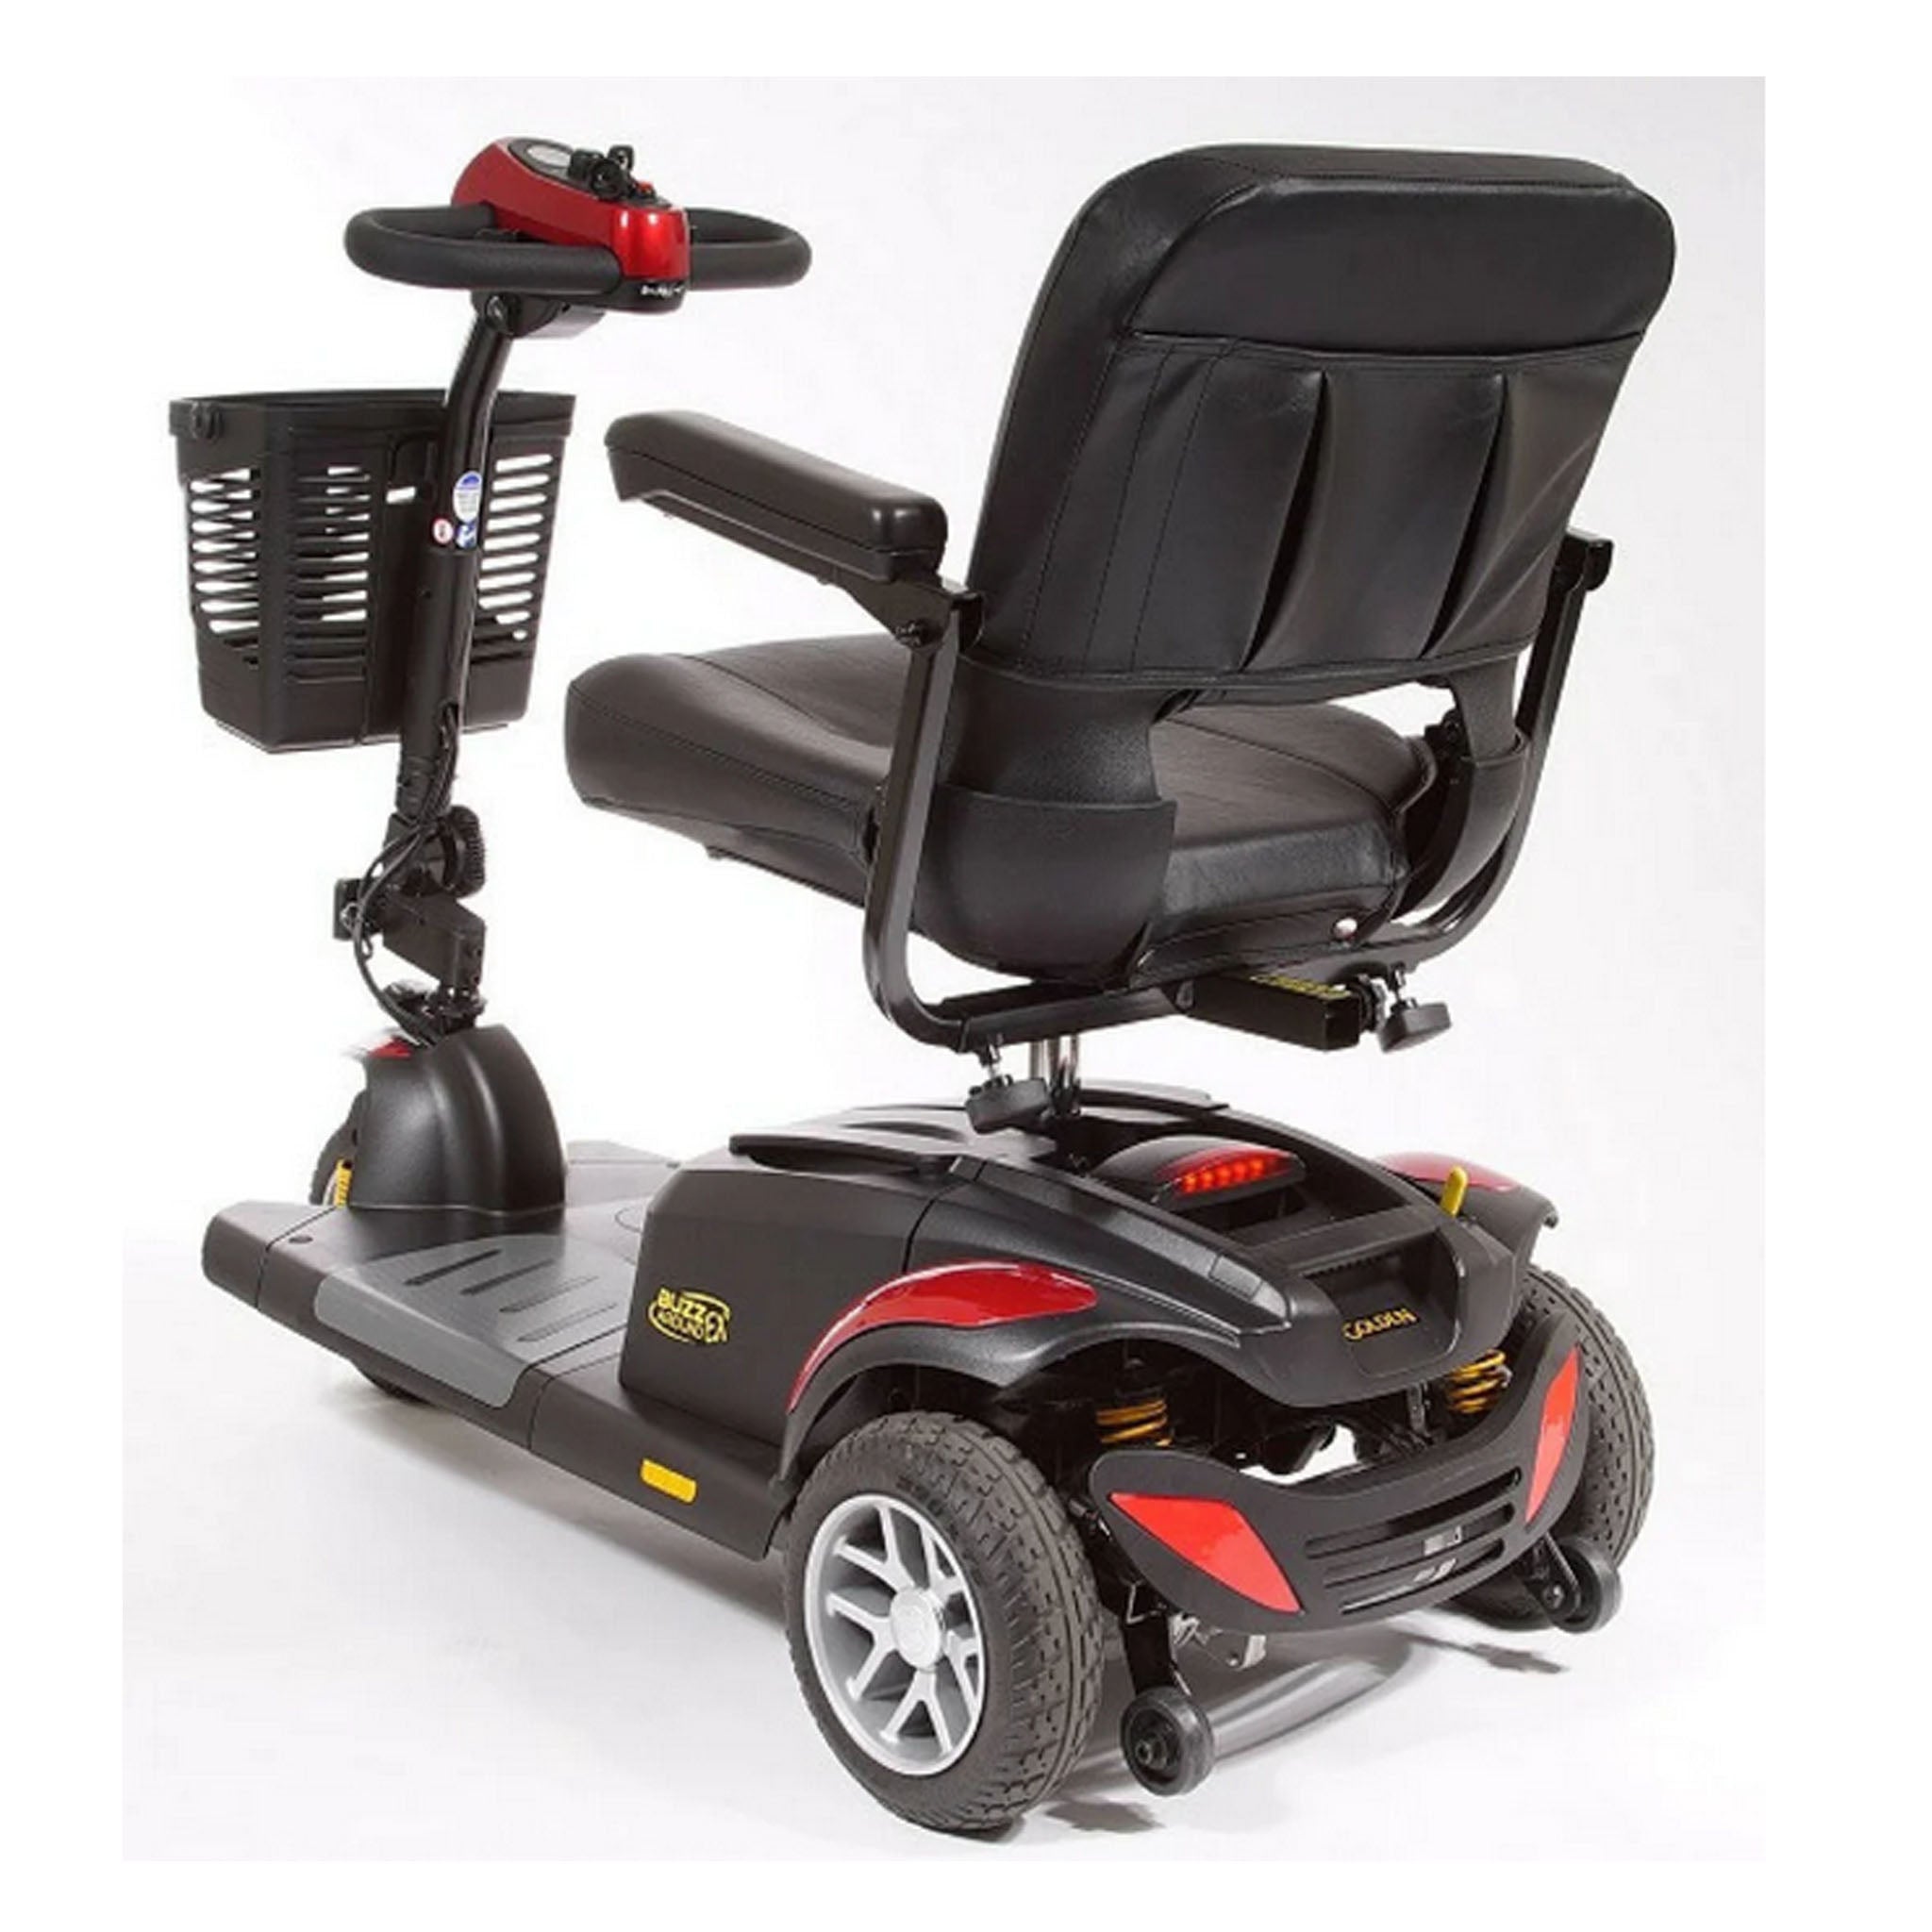 Golden Technologies Buzzaround EX 3 Wheel Scooter